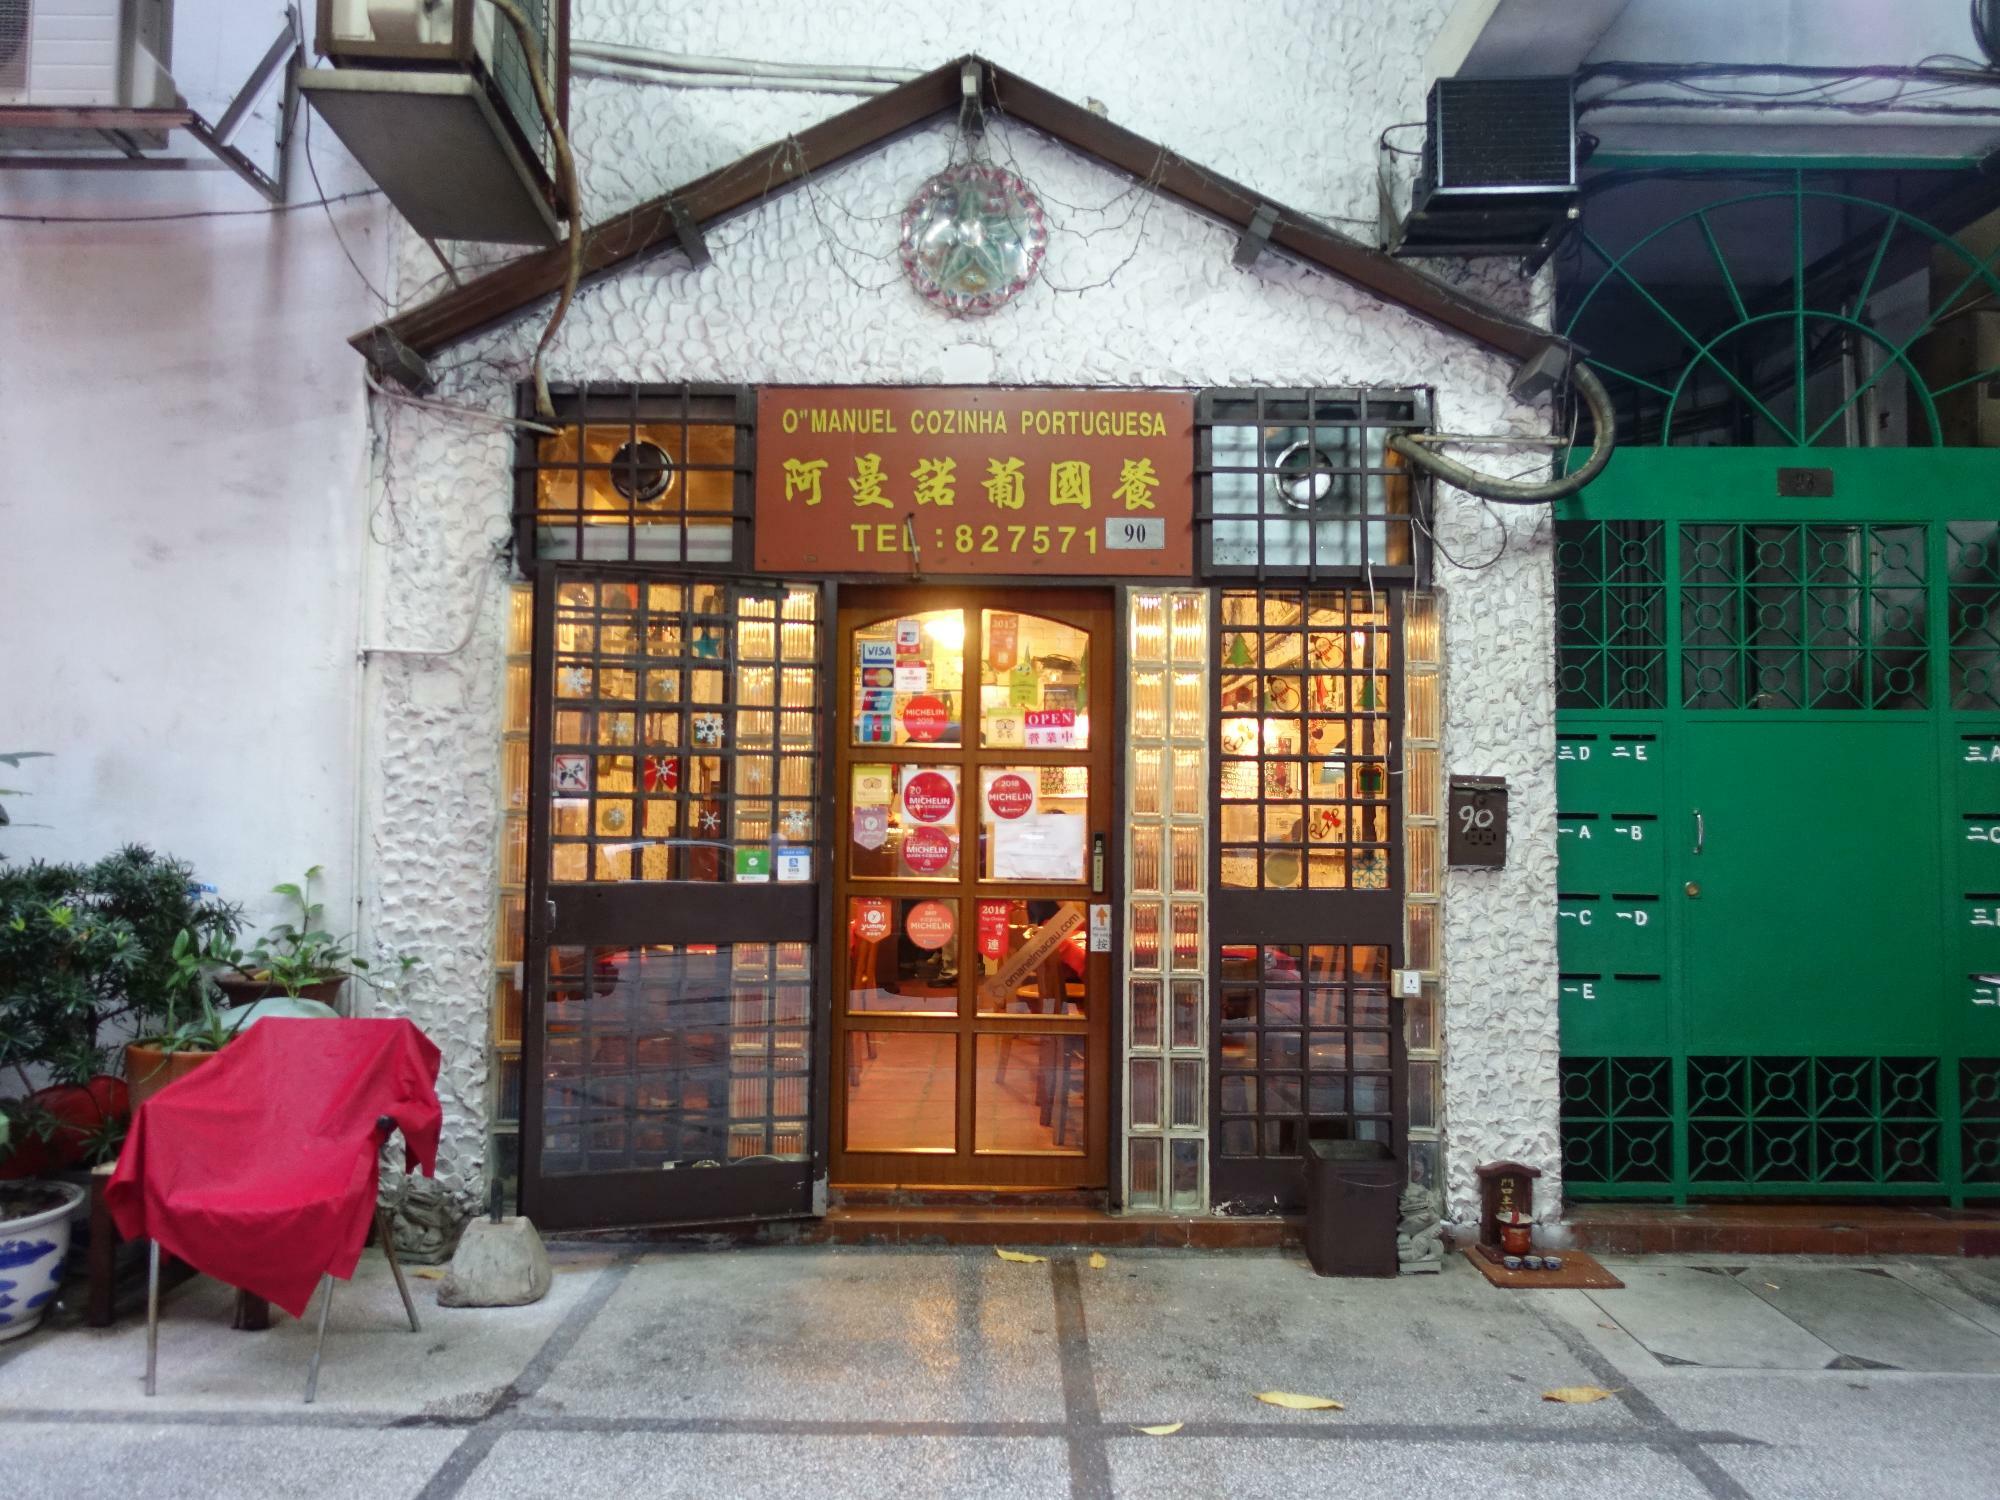 マカオ・タイパ地区にある本店「O Manuel Cozinha Portuguesa」